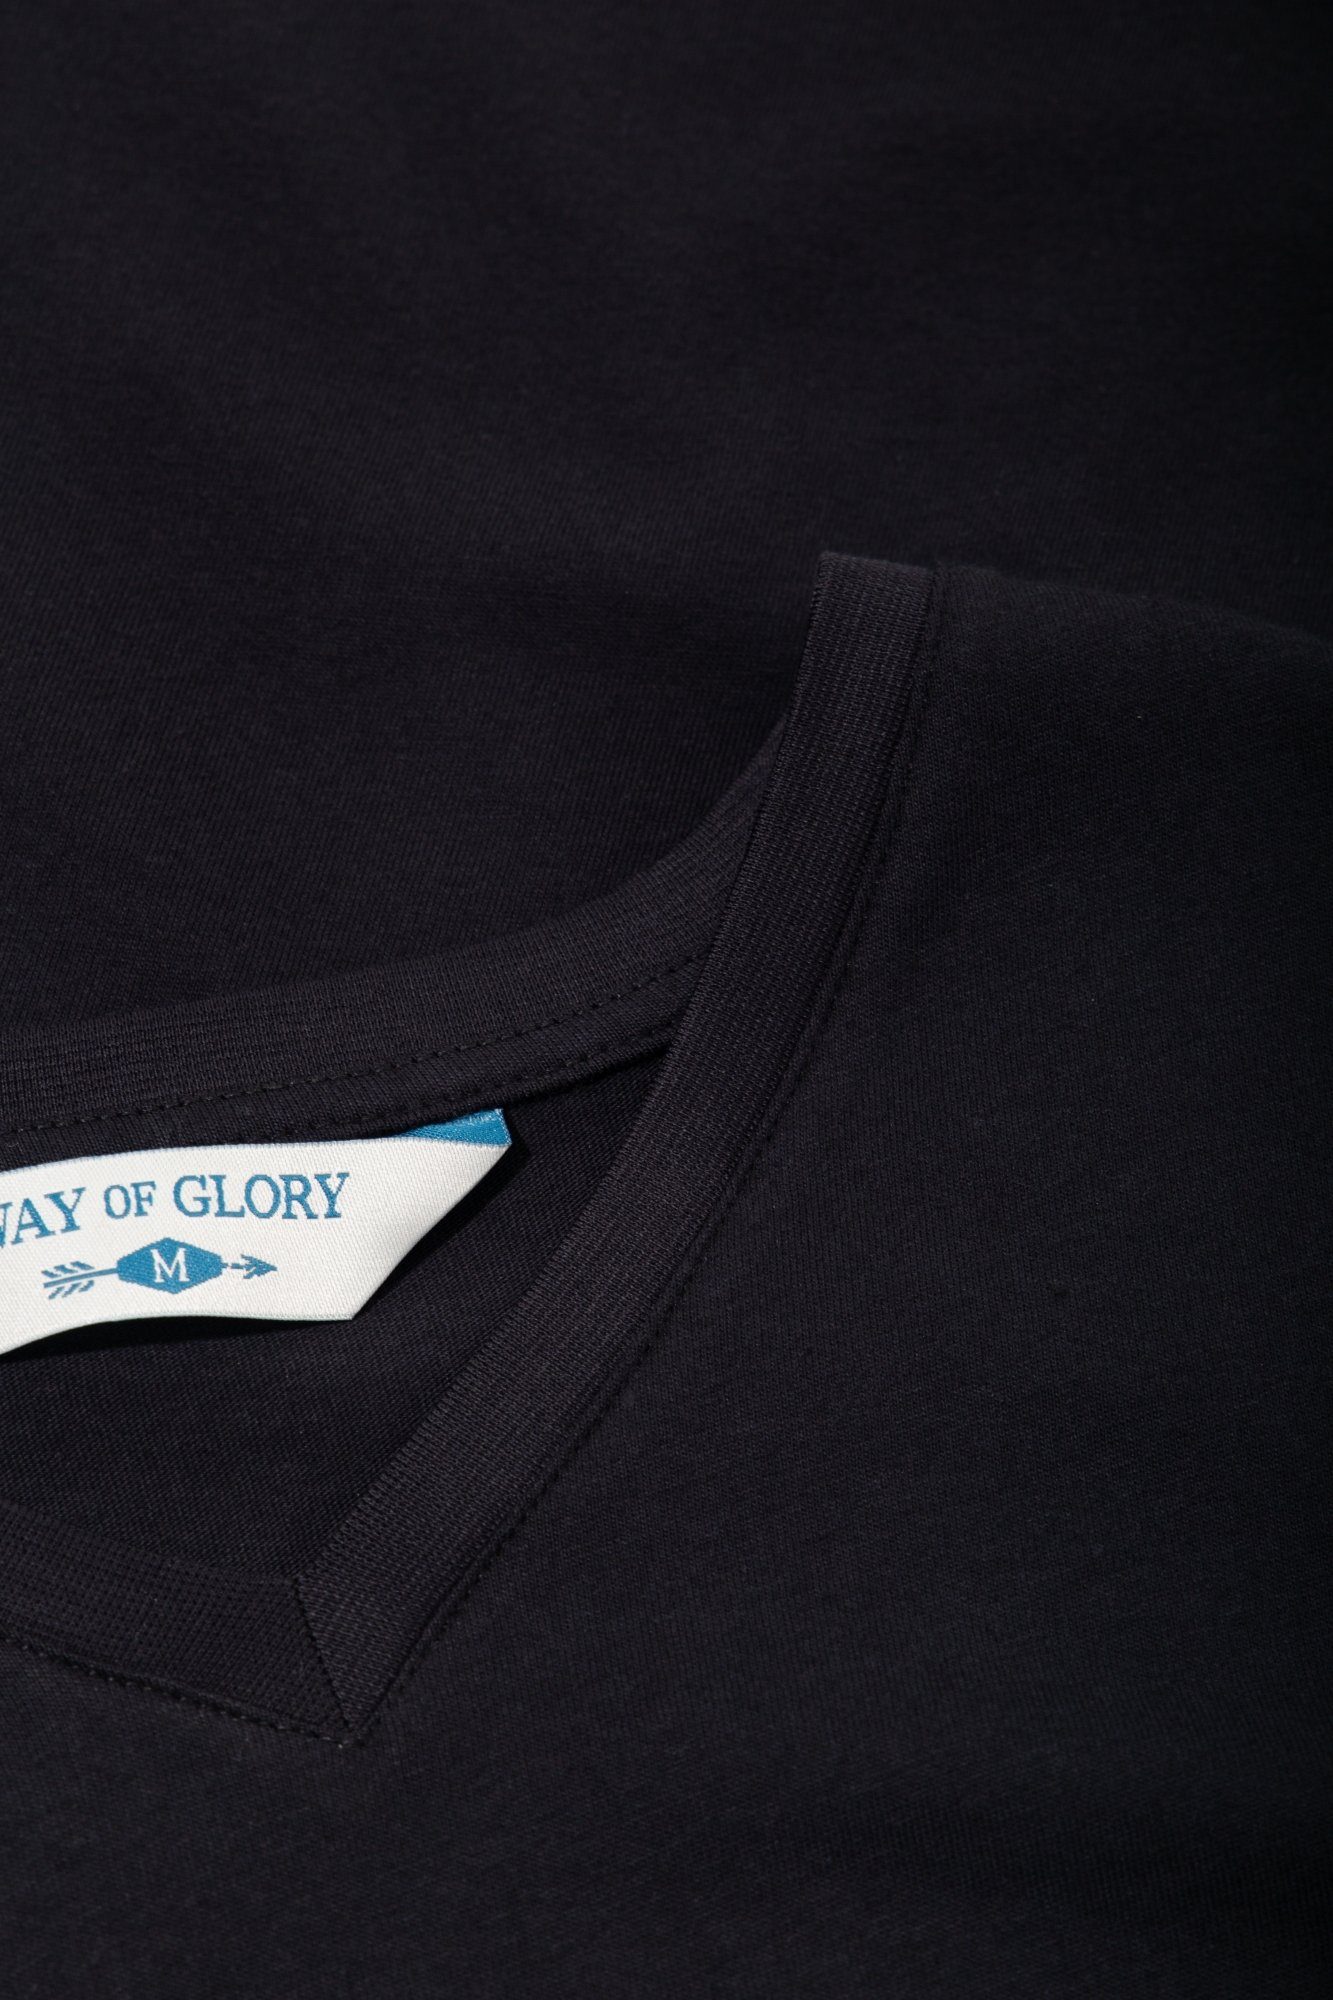 Way of Glory T-Shirt schwarz mit V-Ausschnitt